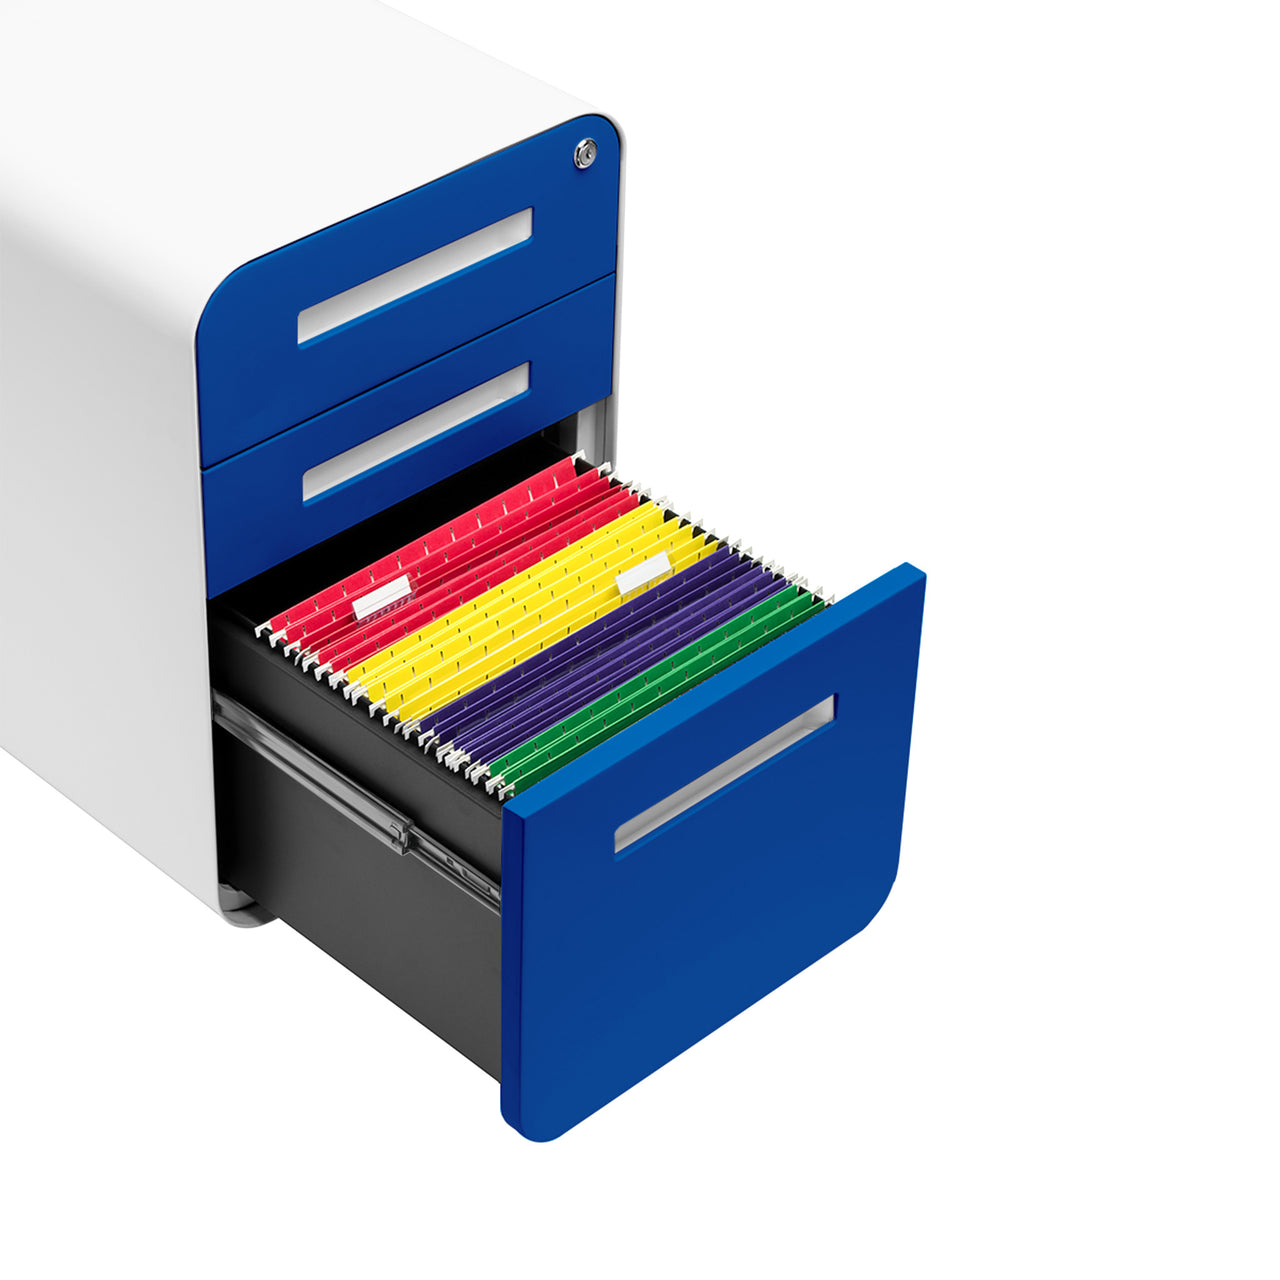 Stockpile Curve File Cabinet (Blue Faceplate)